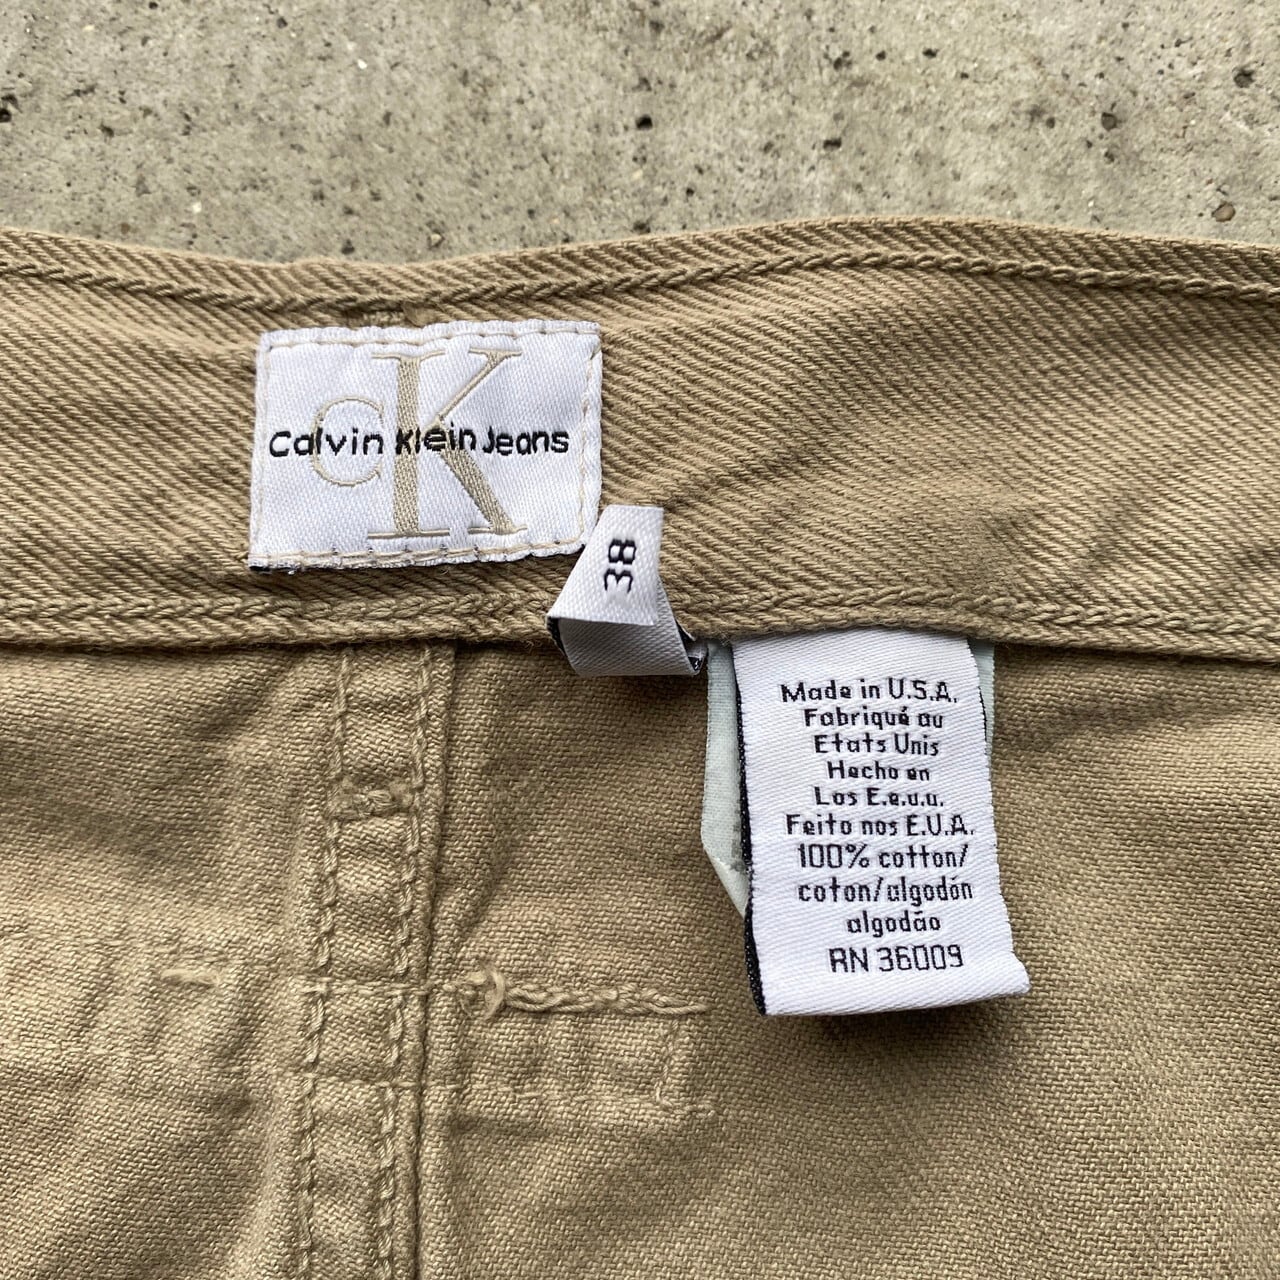 DEAD STOCK ビッグサイズ 90年代 USA製 Calvin Klein Jeans カラーデニム ペインターパンツ メンズW38 古着  ワイドデニムパンツ カルバンクラインジーンズ 90s ヴィンテージ ビンテージ デッドストック フラッシャー付き ベージュ【デニムパンツ】【AN20】  | 